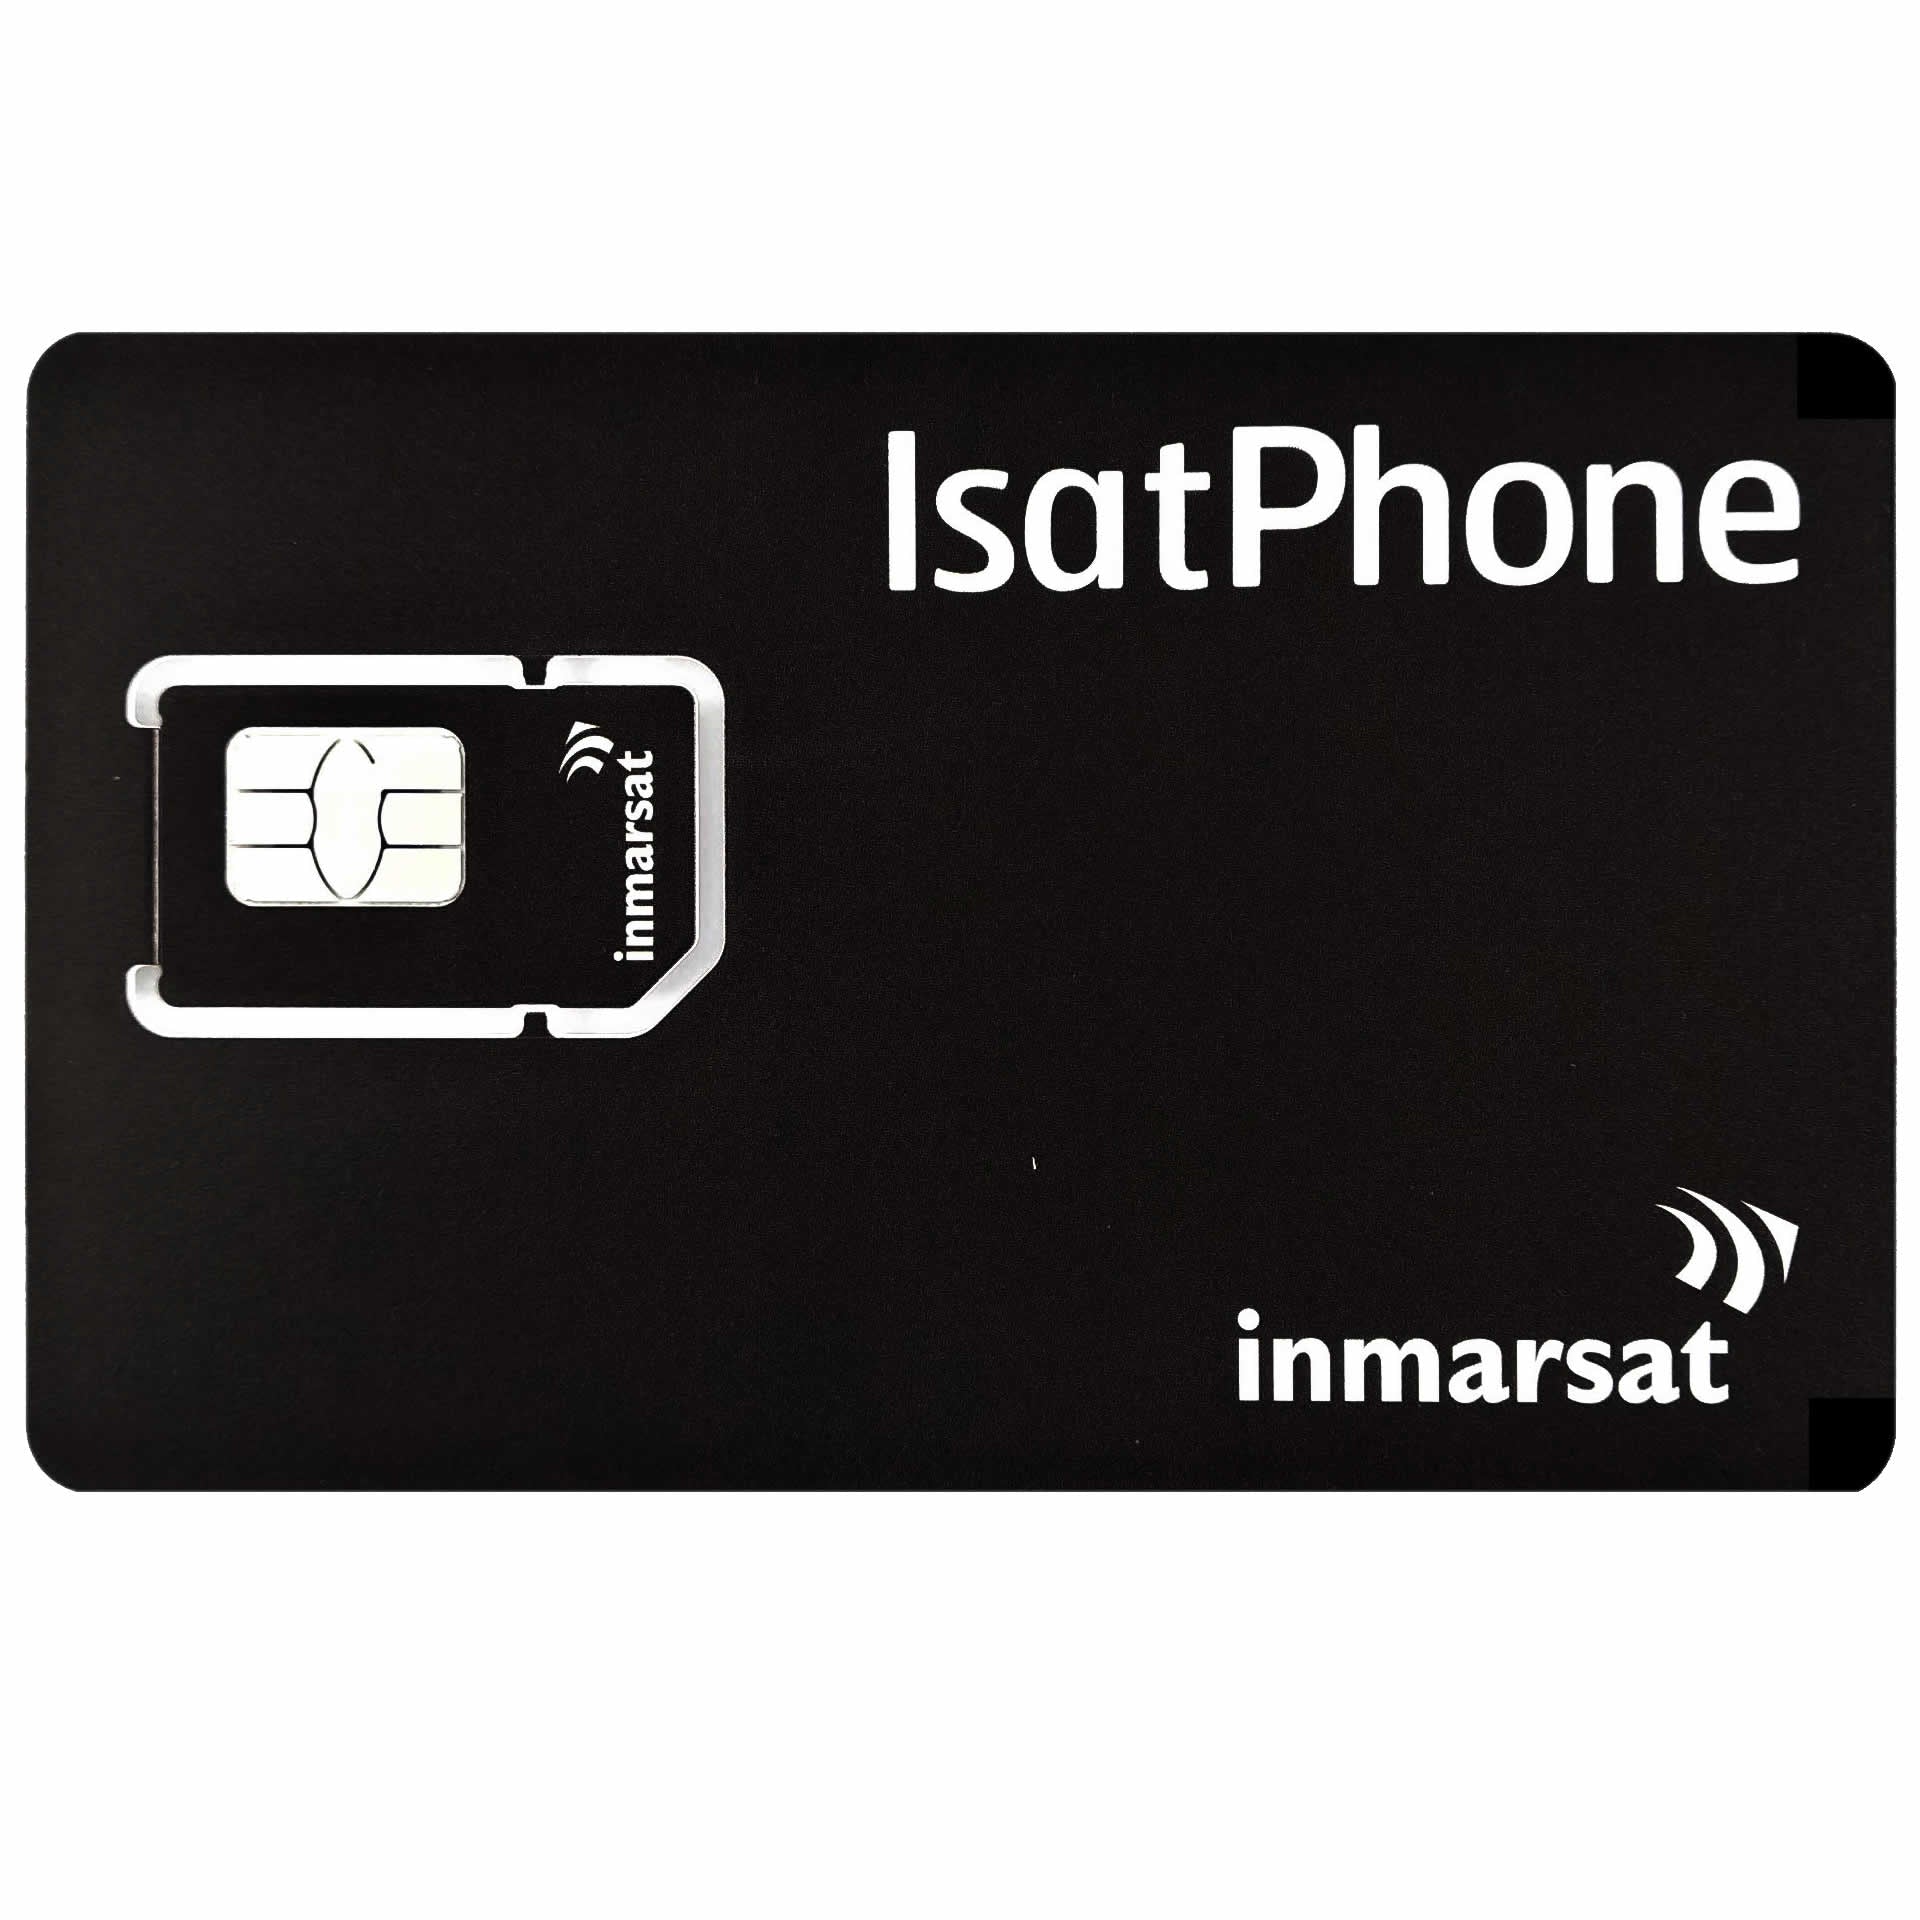 INMARSAT Prepaid-Karte Aufladbar ISATPHONE - 1000 EINHEITEN - 365 TAGE